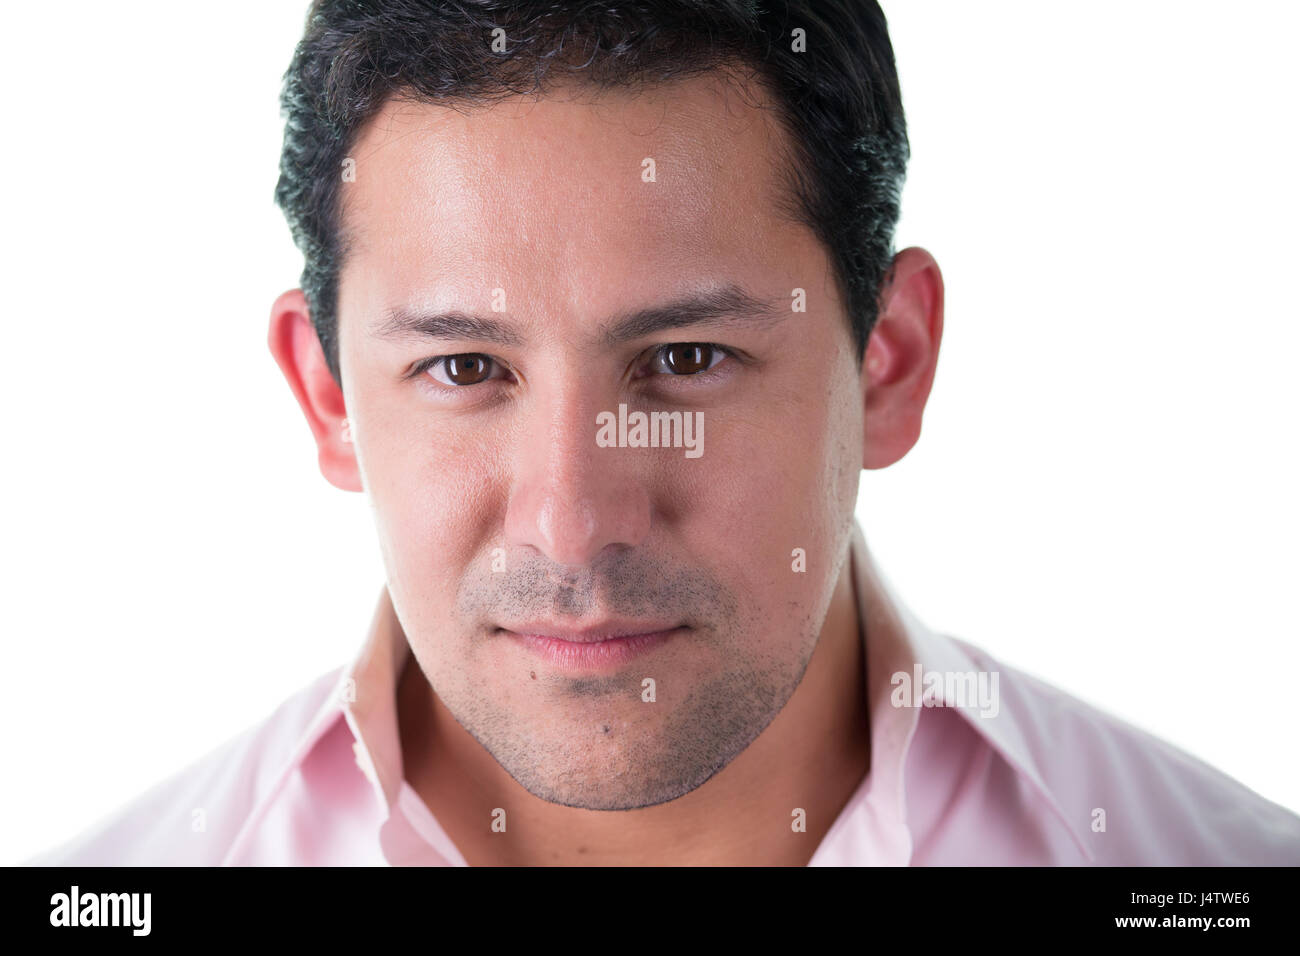 Closeup portrait d'acteur en confiant headshot chemise rose, isolé sur fond blanc Banque D'Images